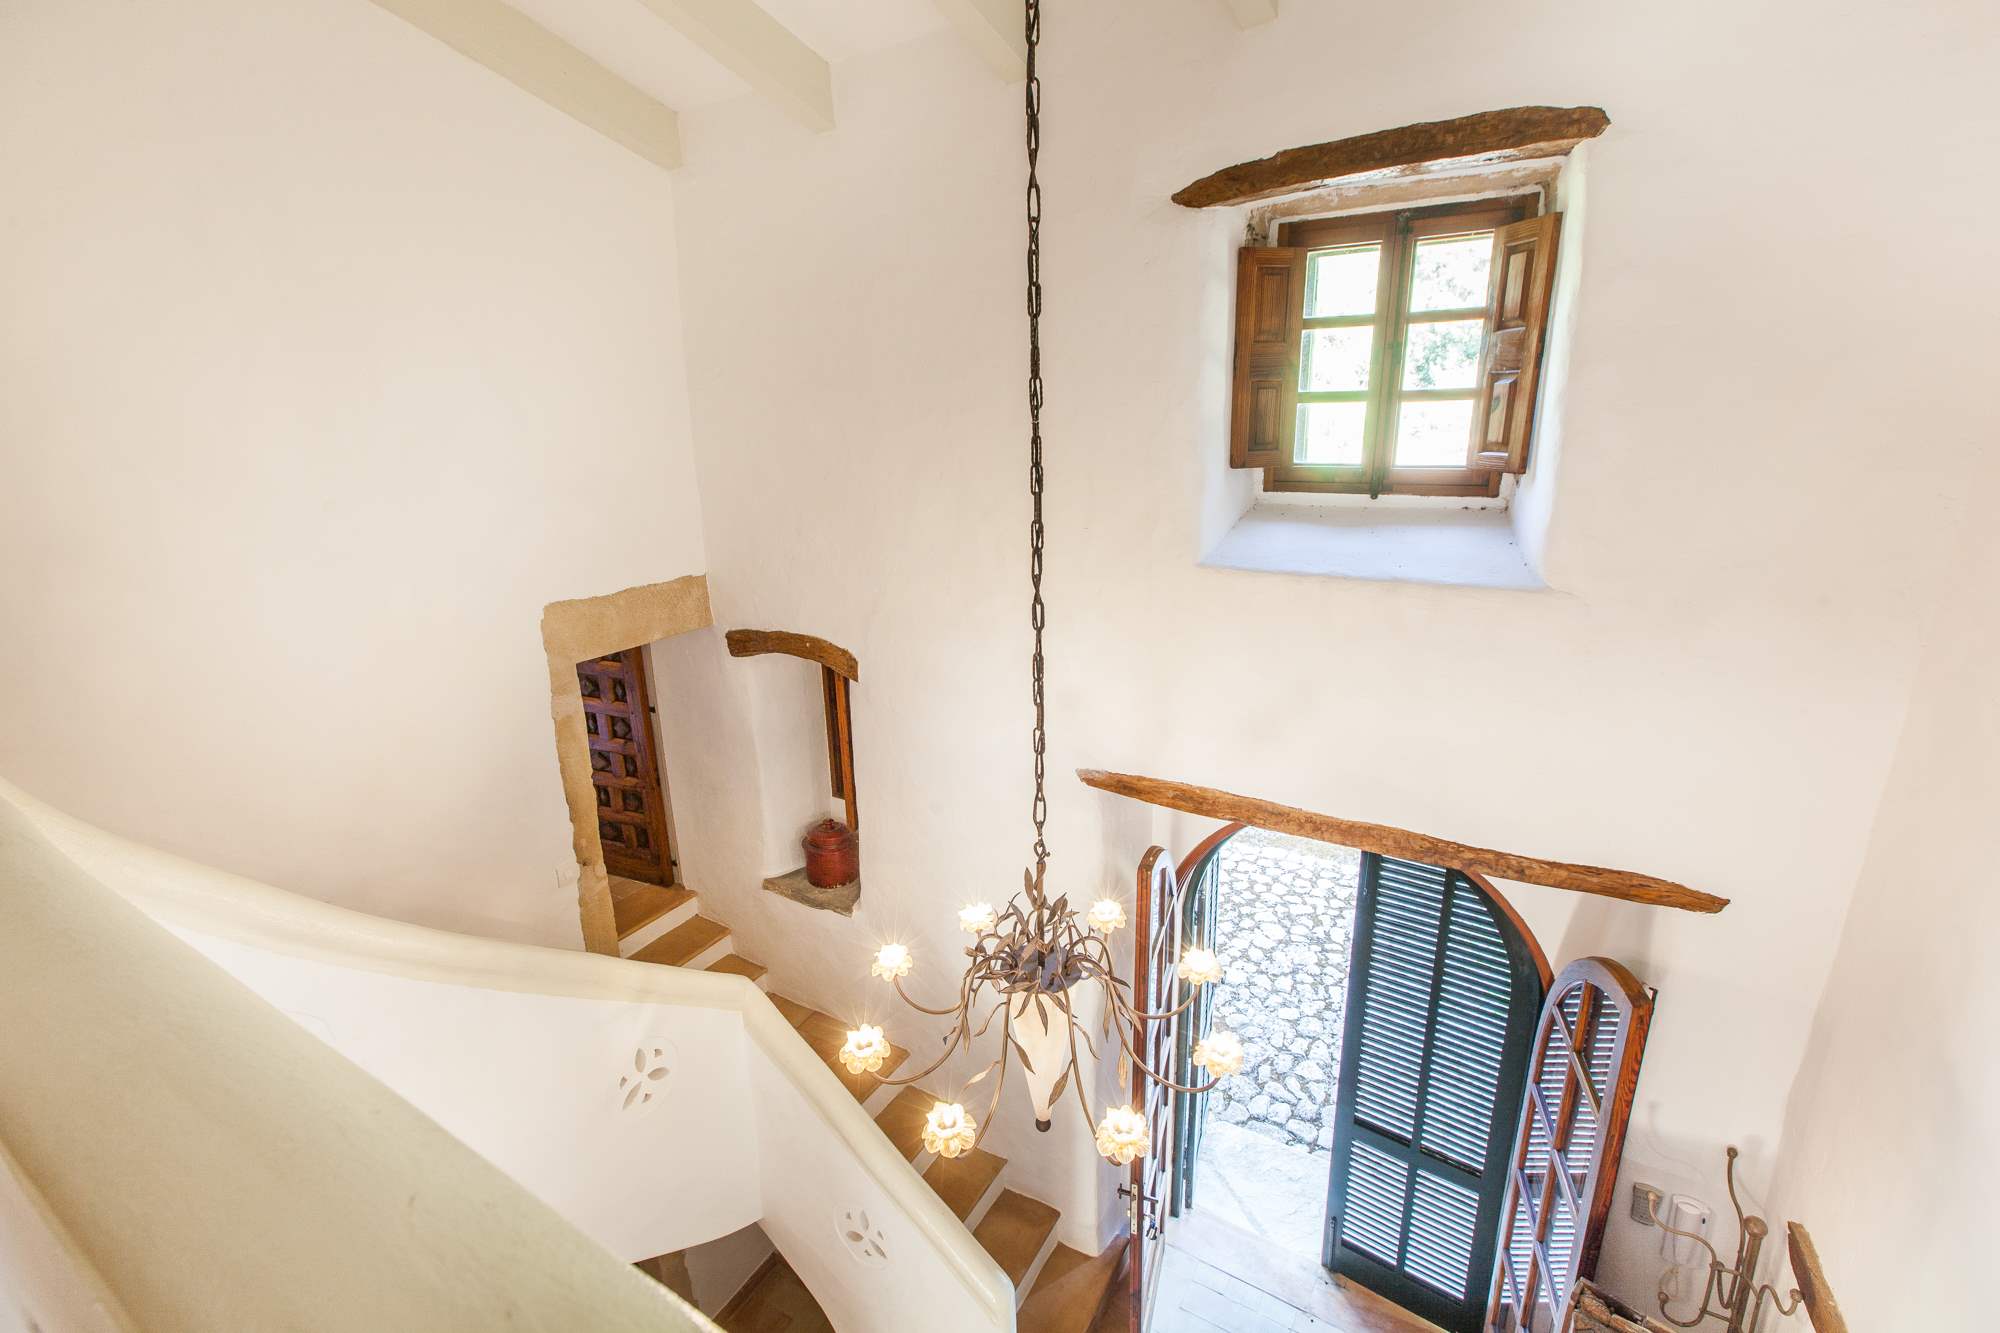 Es Clotal, 2 bedroom, 2 bedroom villa in Pollensa & Puerto Pollensa, Majorca Photo #14